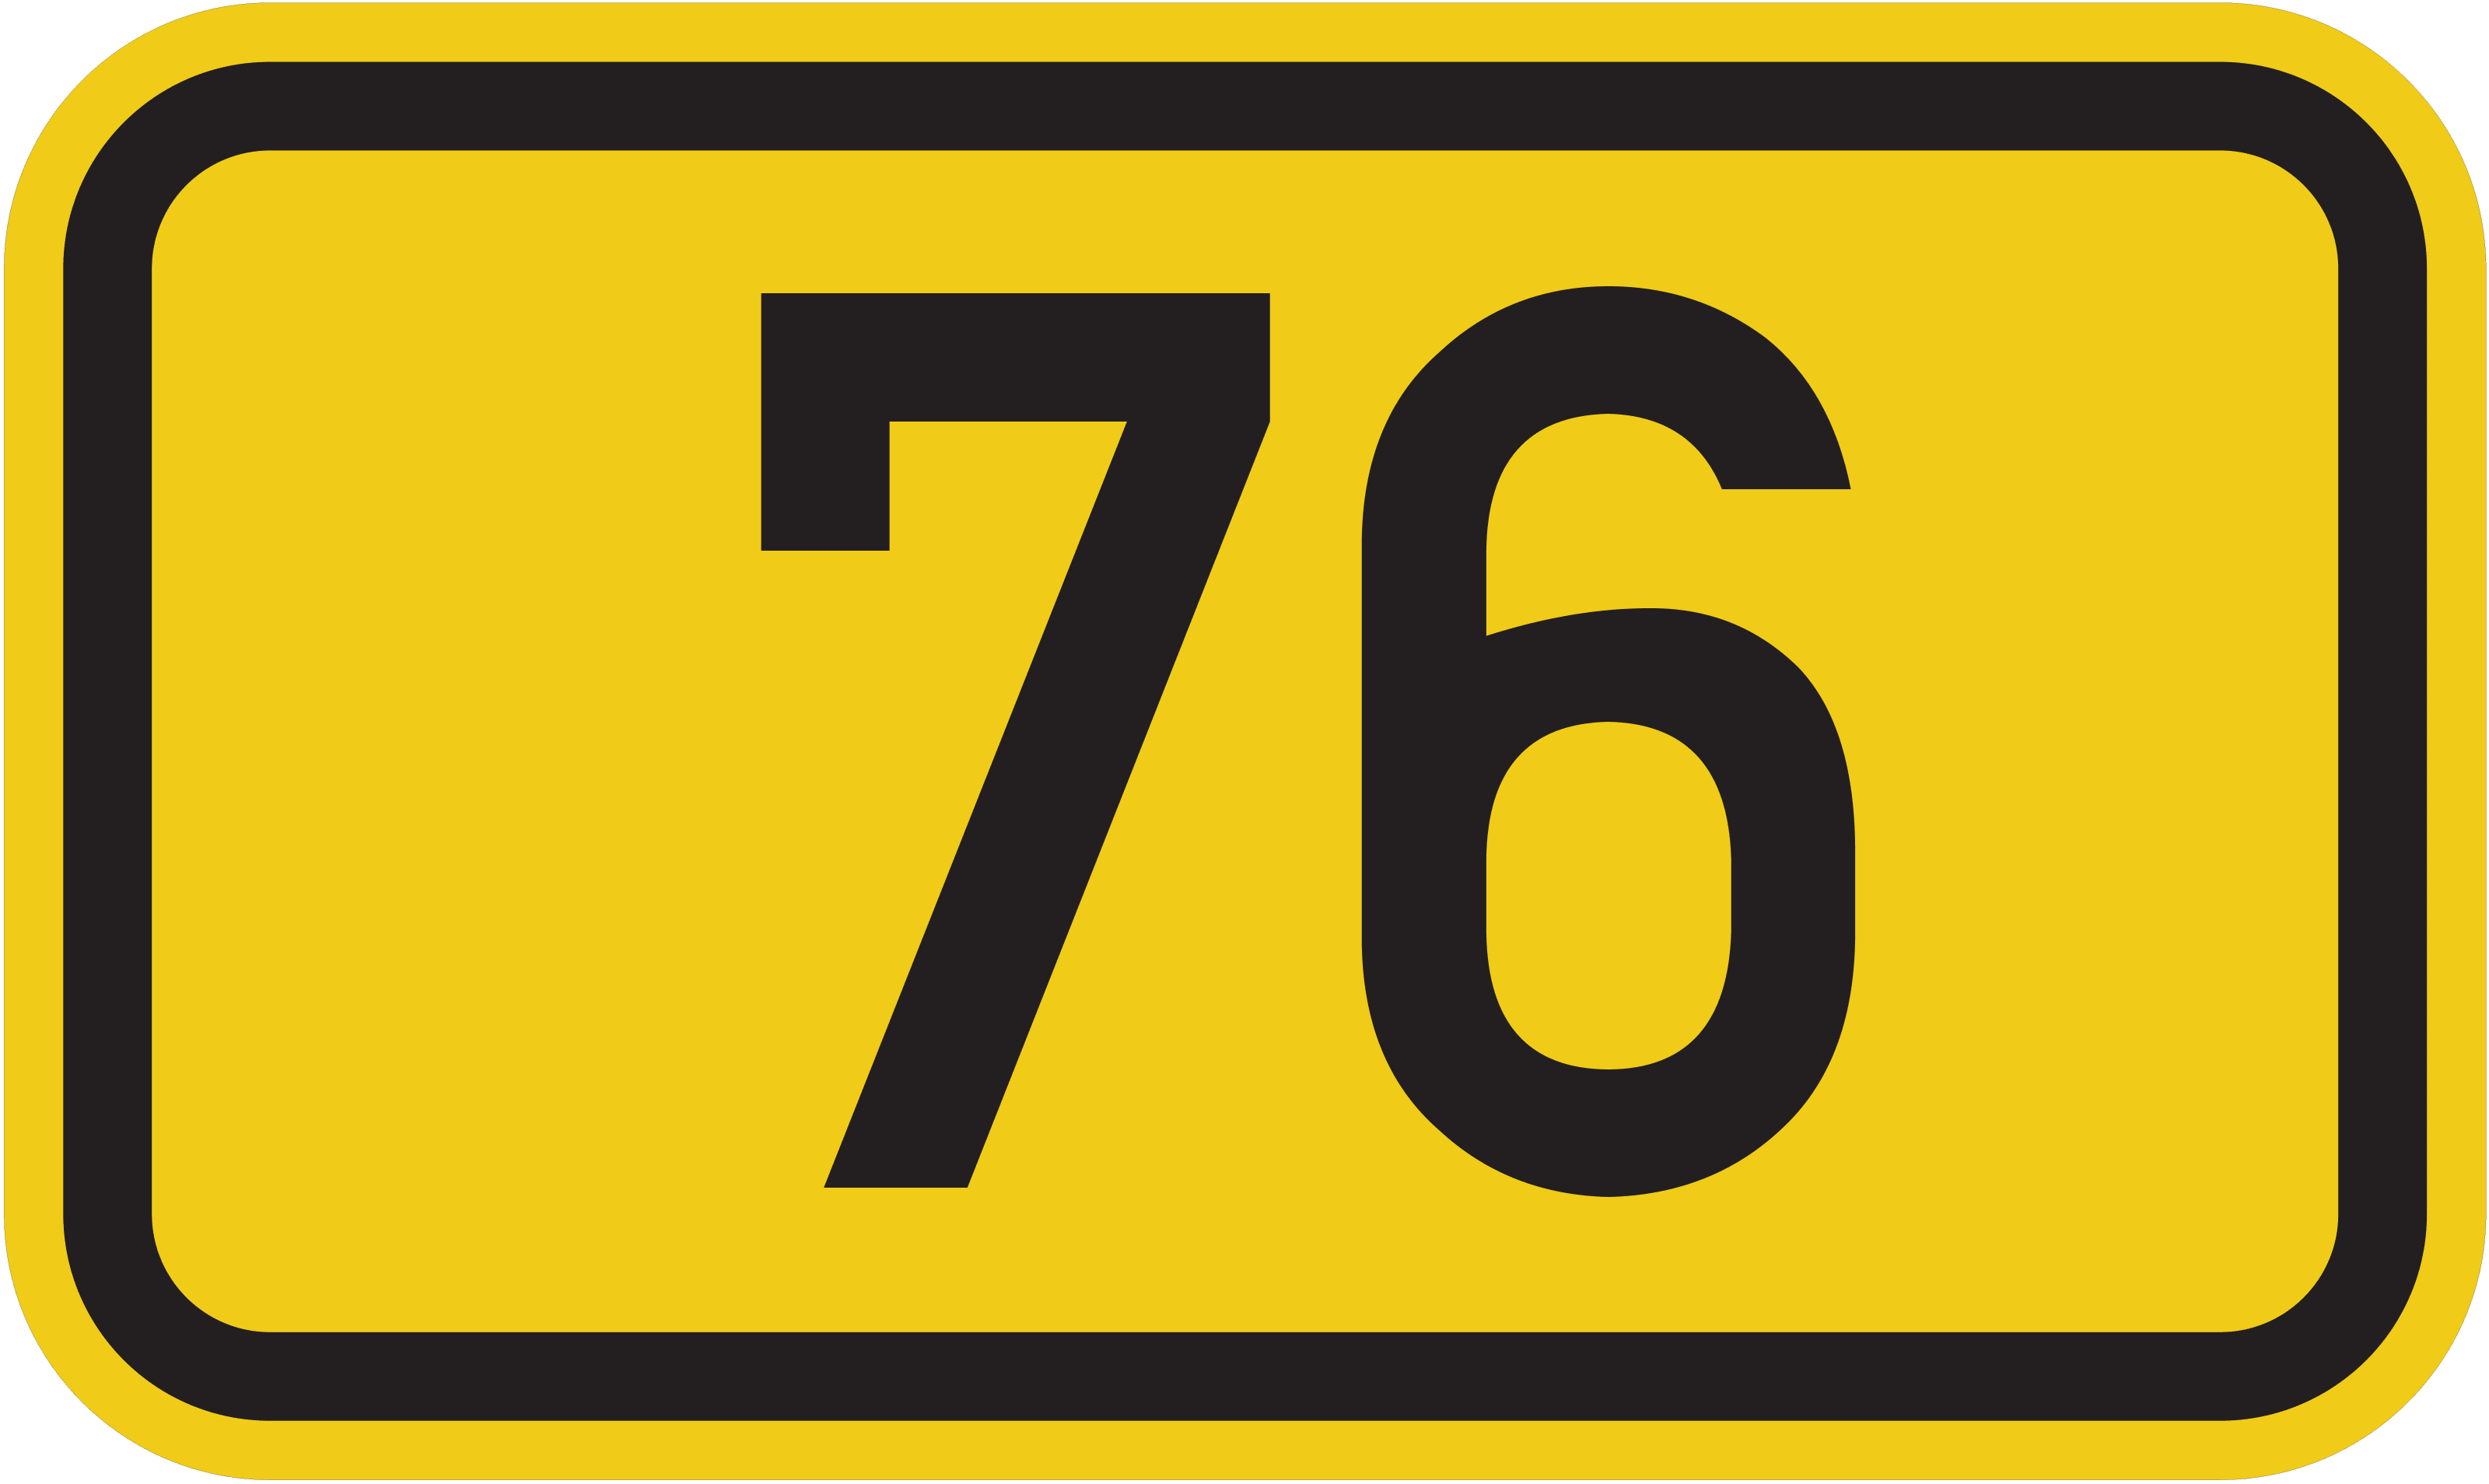 Bundesstraße 76